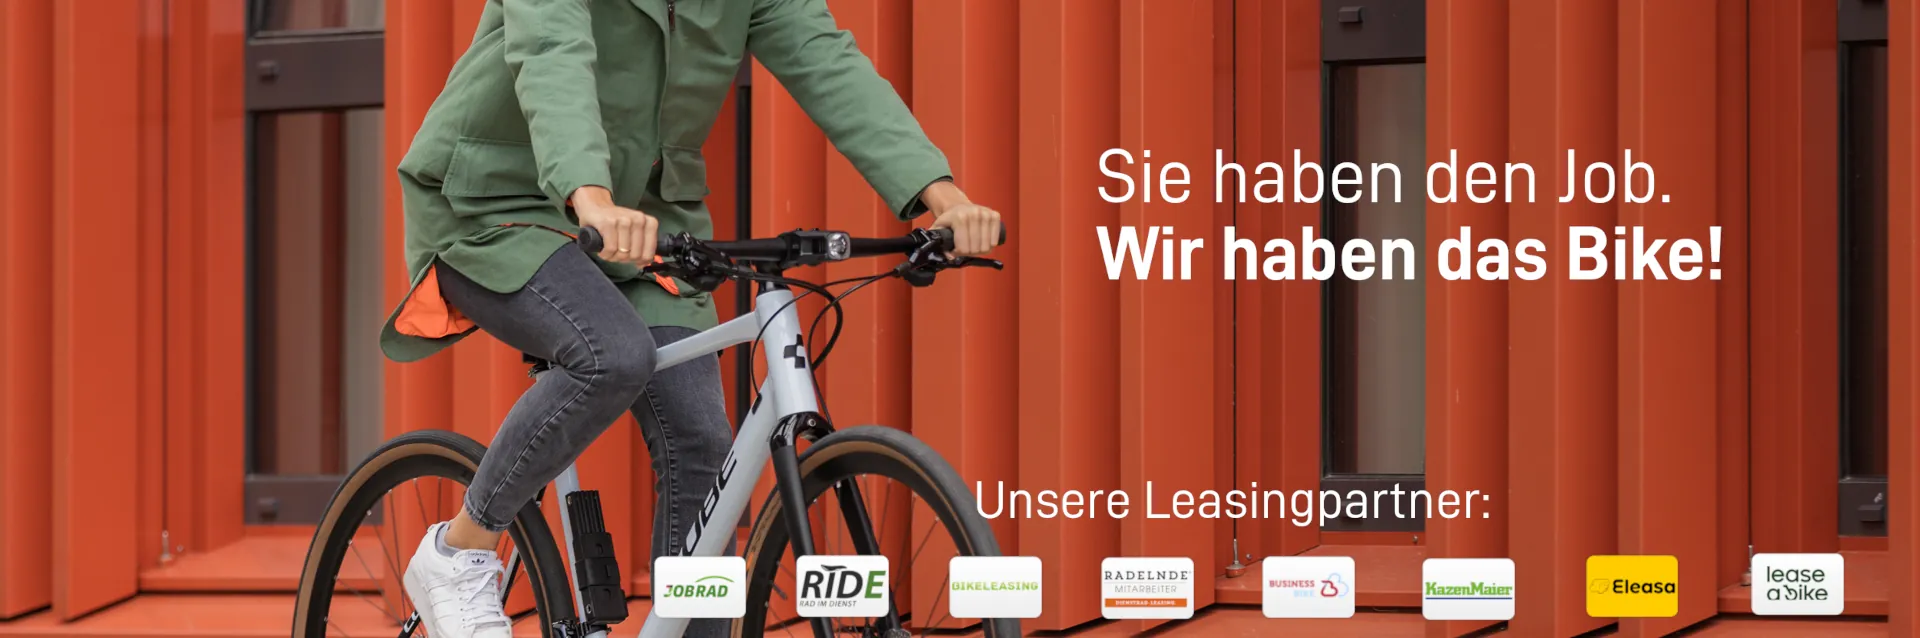 eBike Leasing bei Die Fahrrad-Kette und Cube Stores